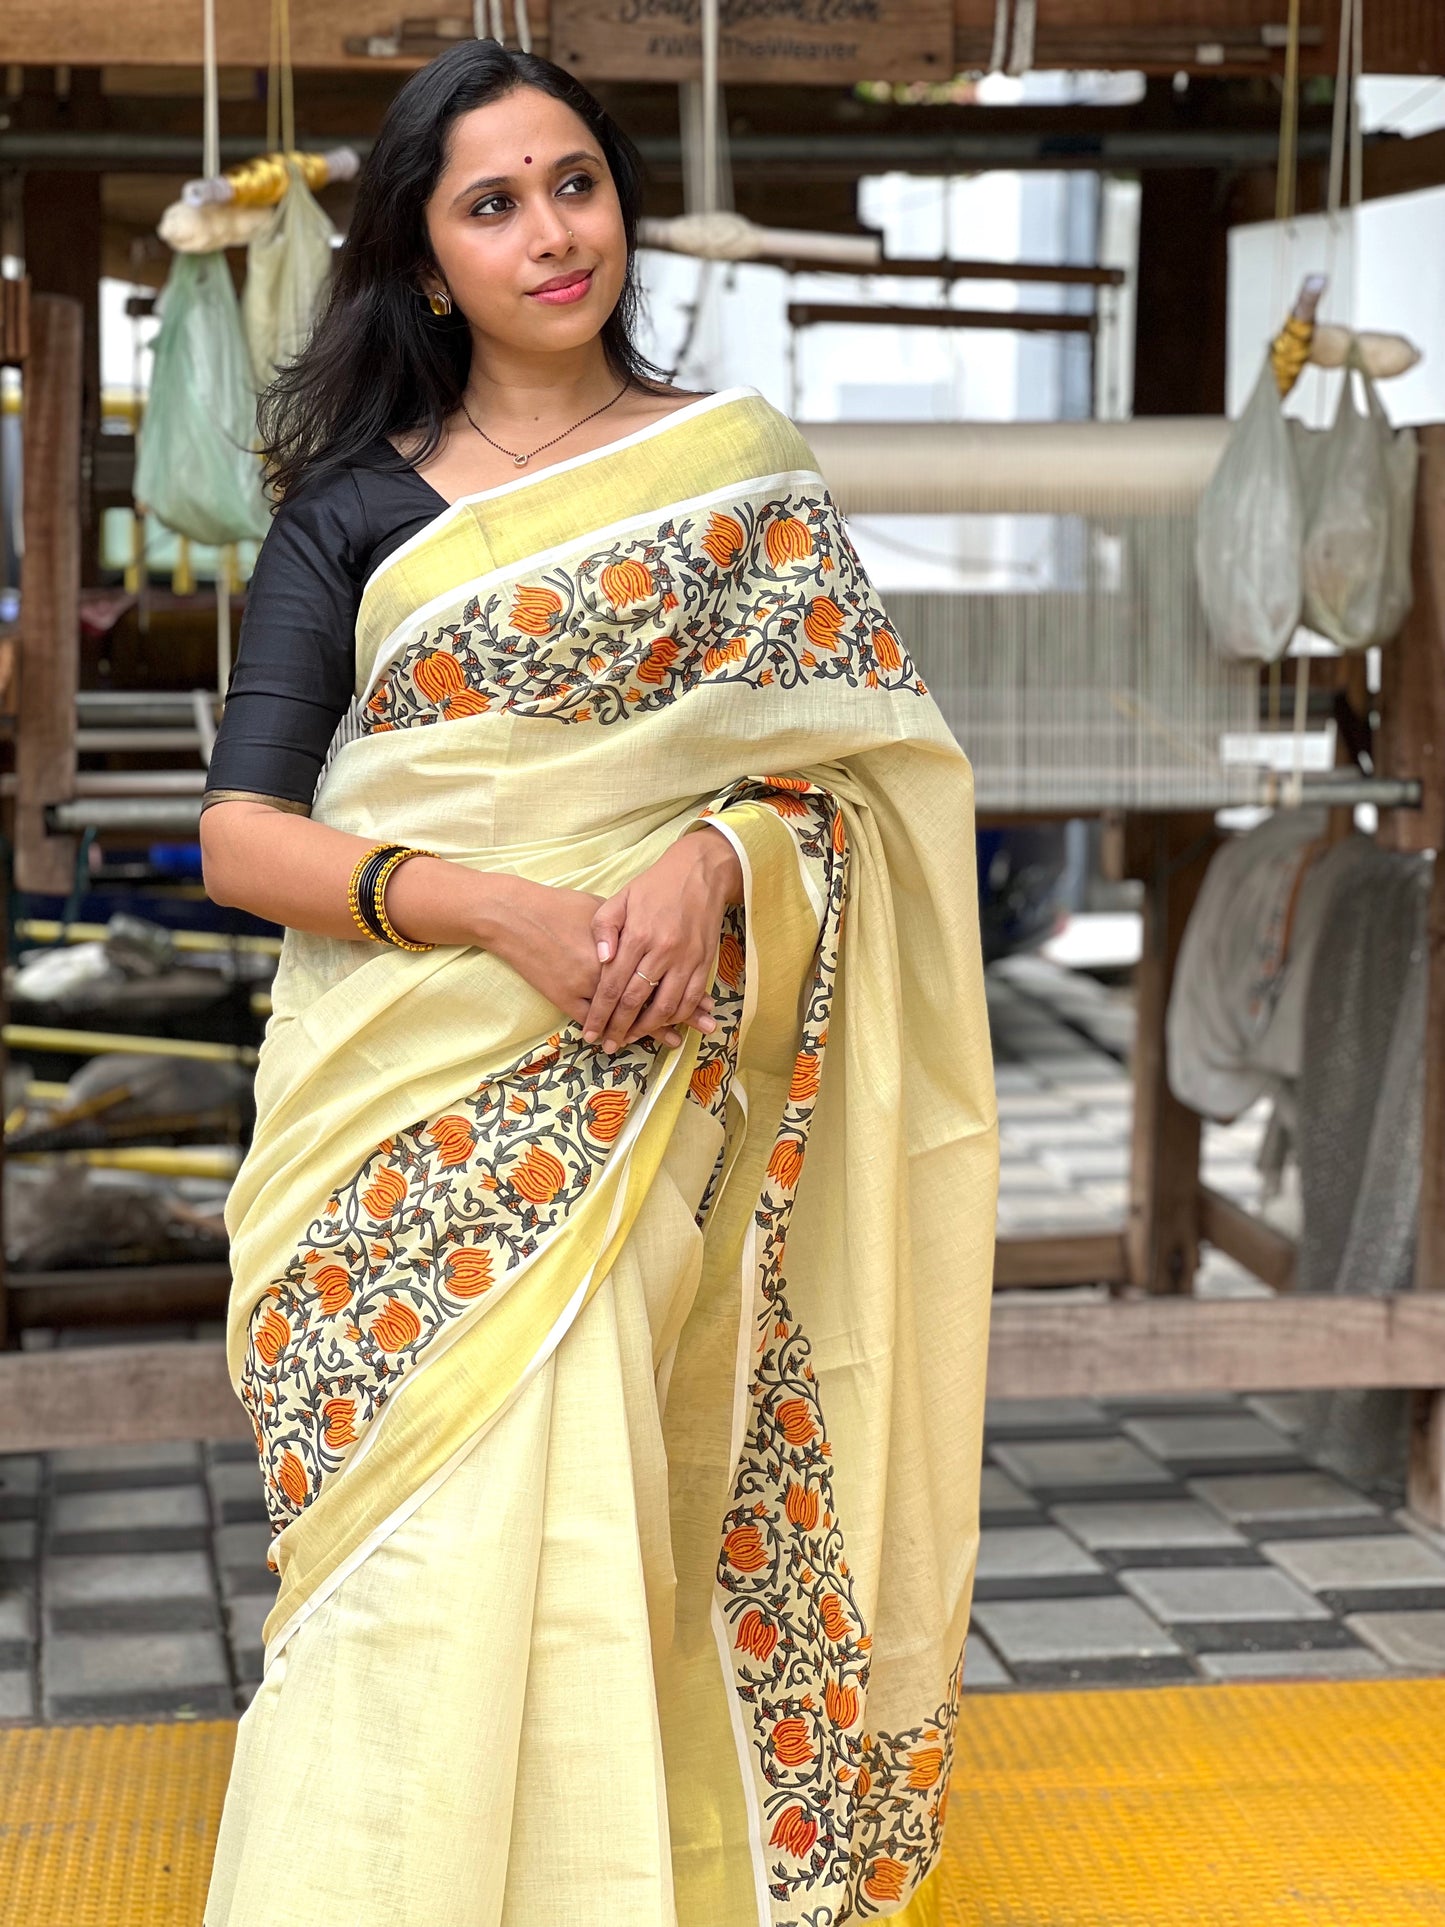 Southloom Jaipur Artisans & Kerala Weavers Collab Orange Floral Printed Tissue Kasavu Saree